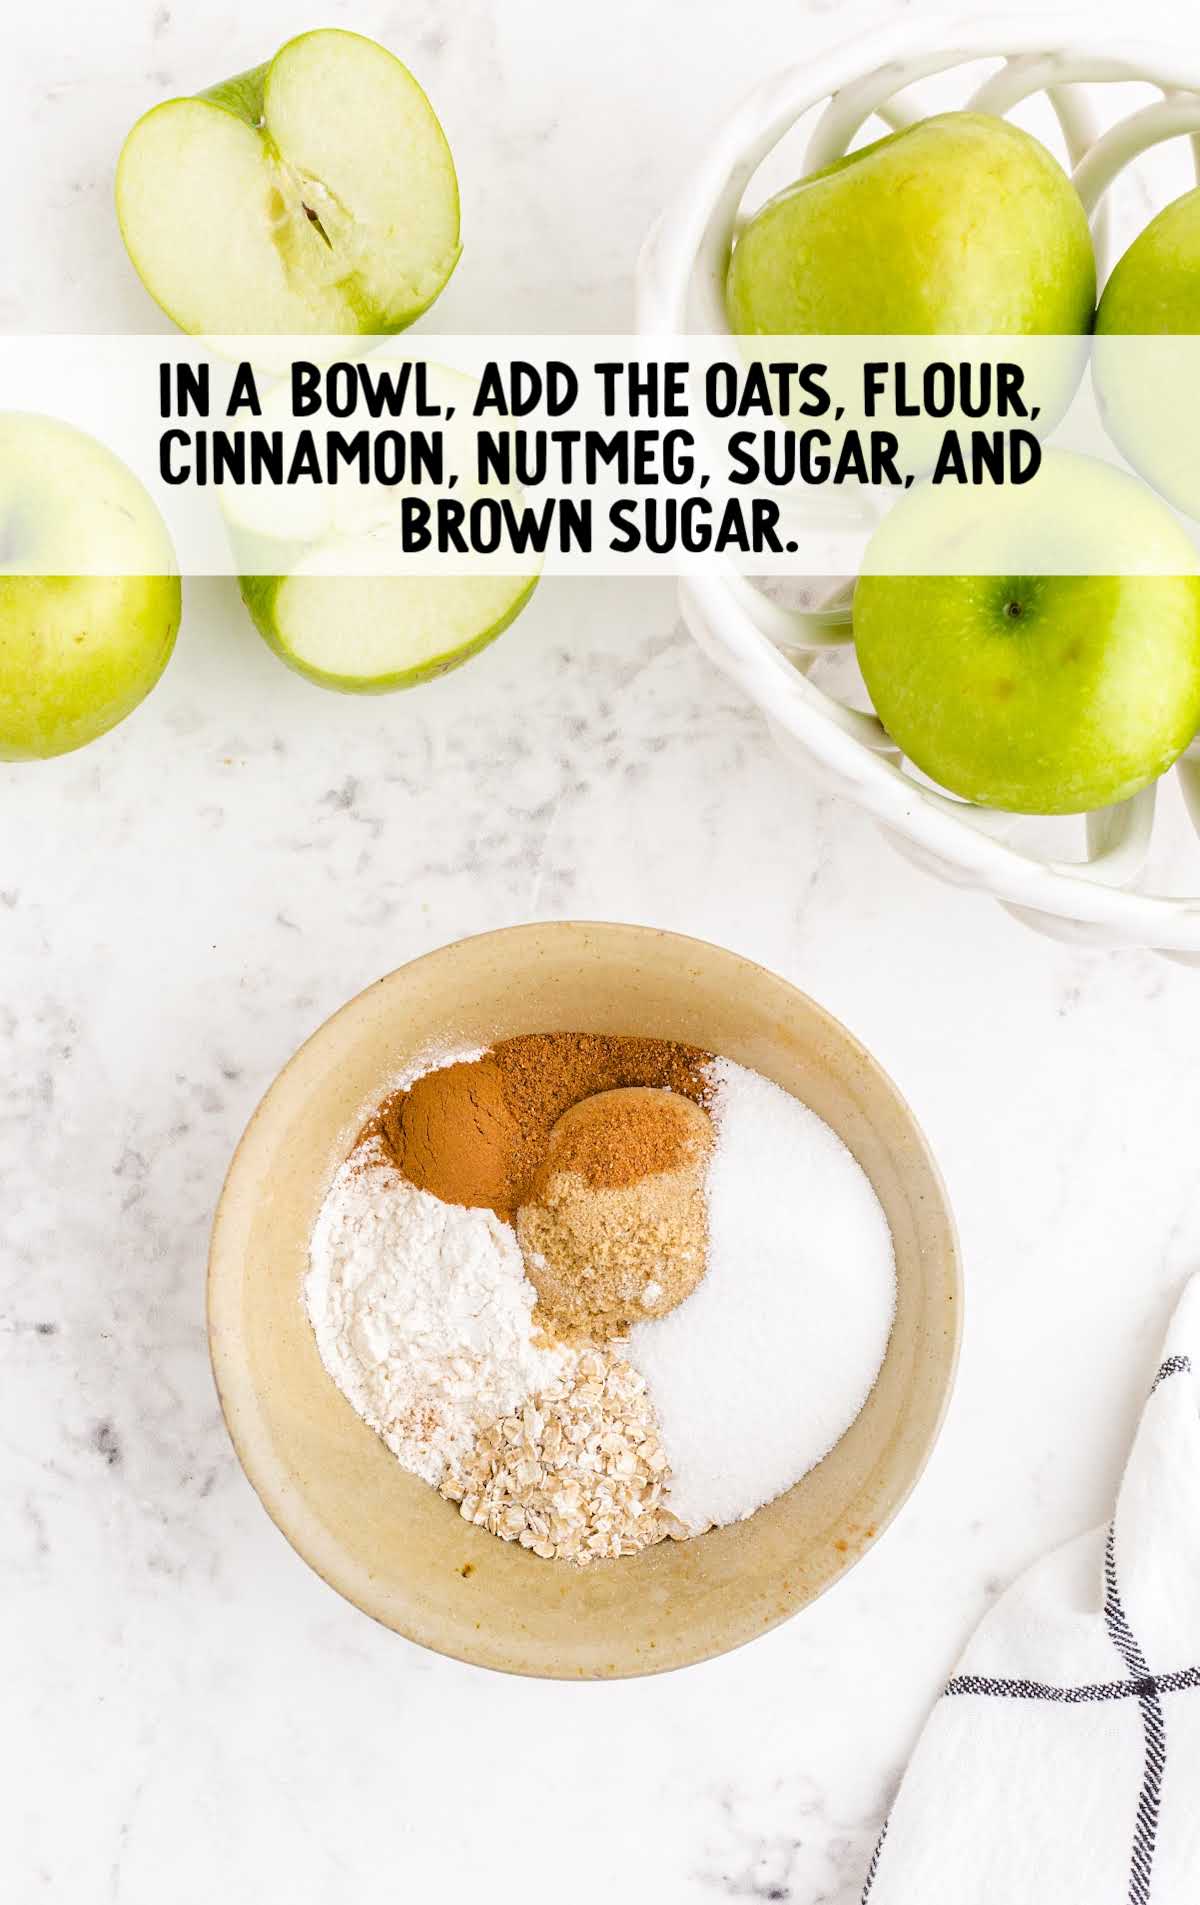 oats, flour, cinnamon, sugar, nutmeg, and brown sugar in a bowl